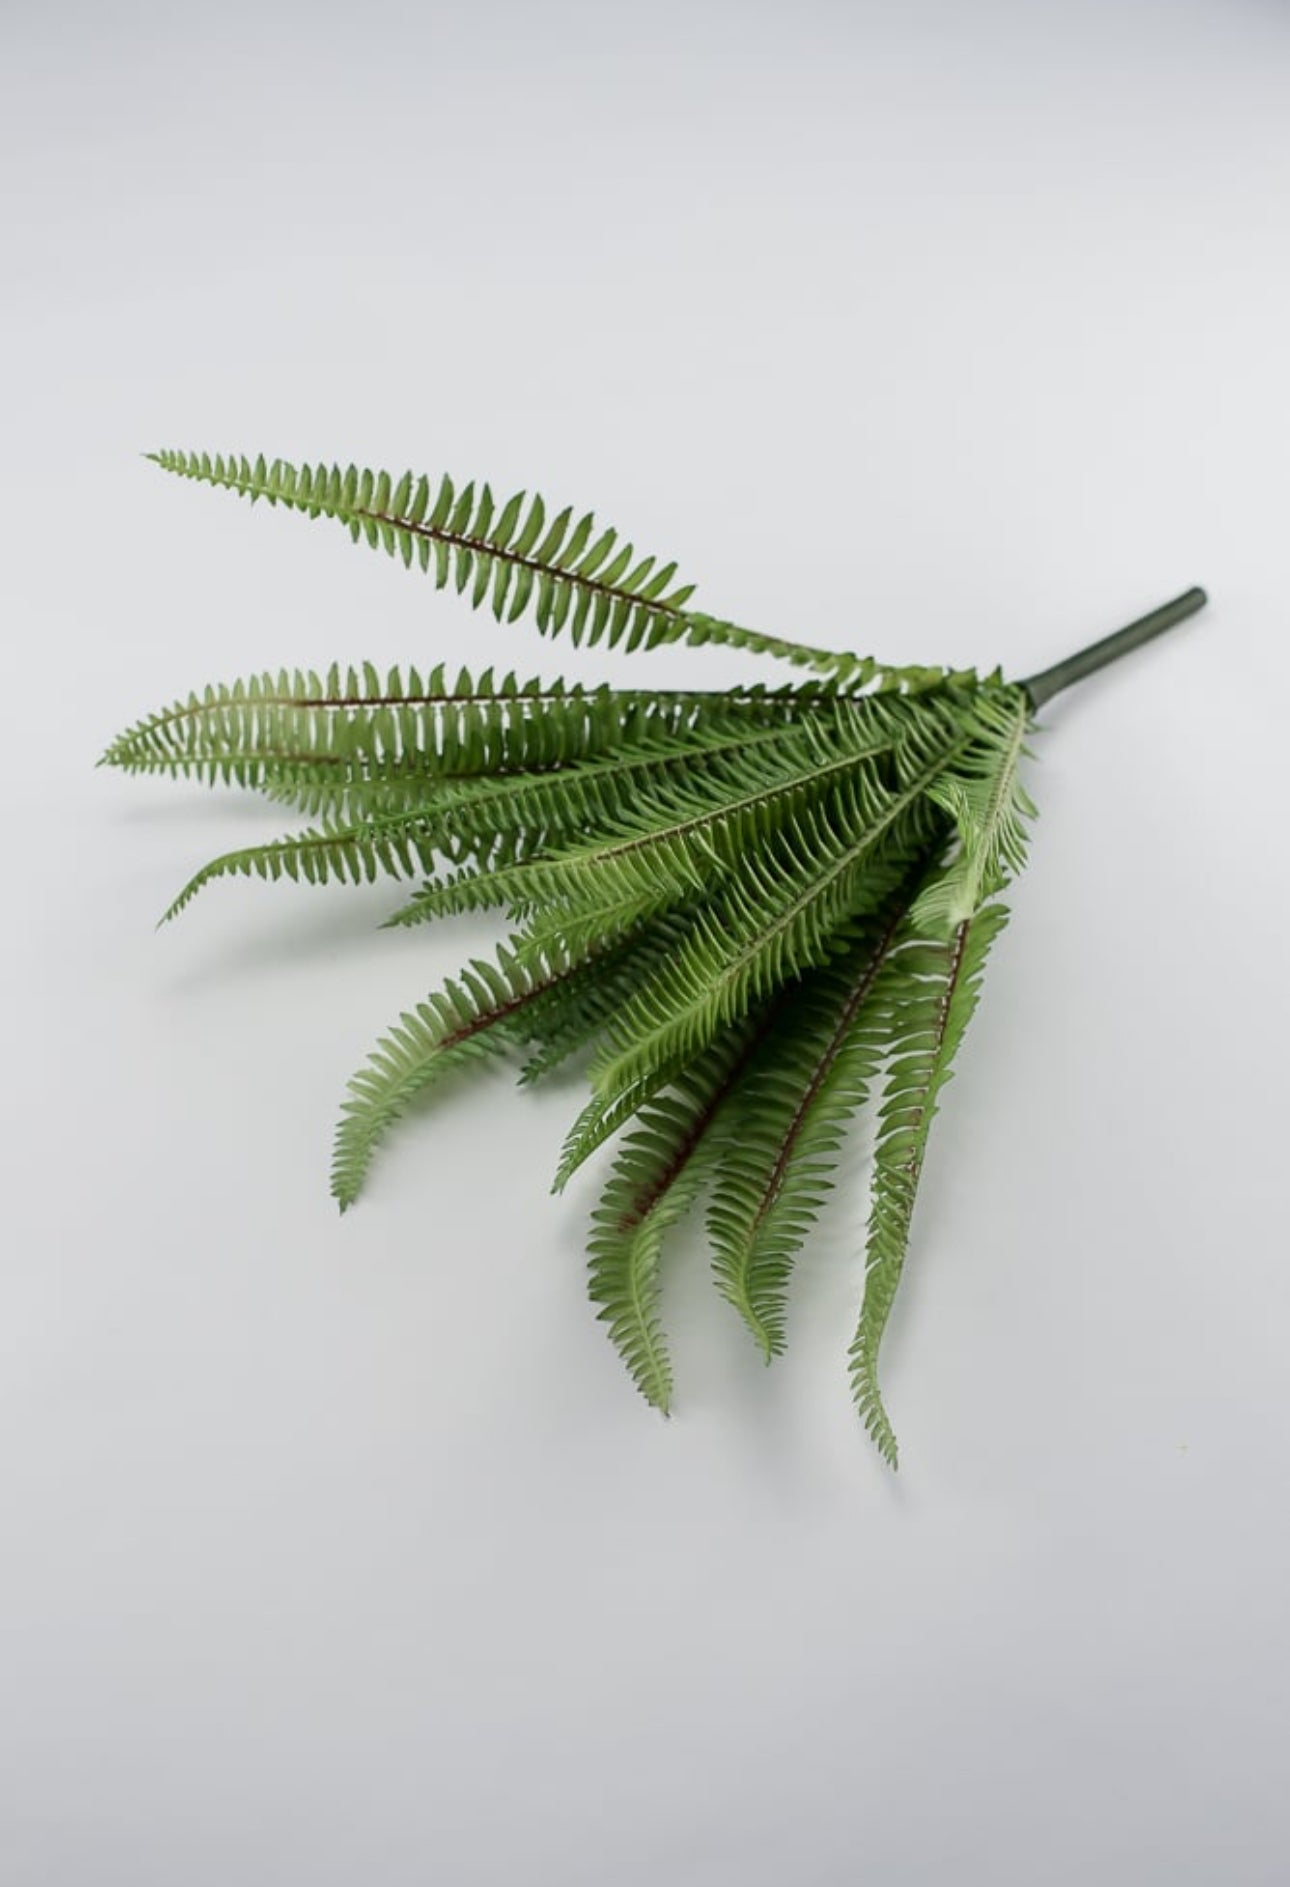 Wired, narrow fern bush, BEST SELLER - Greenery Marketgreenery25772